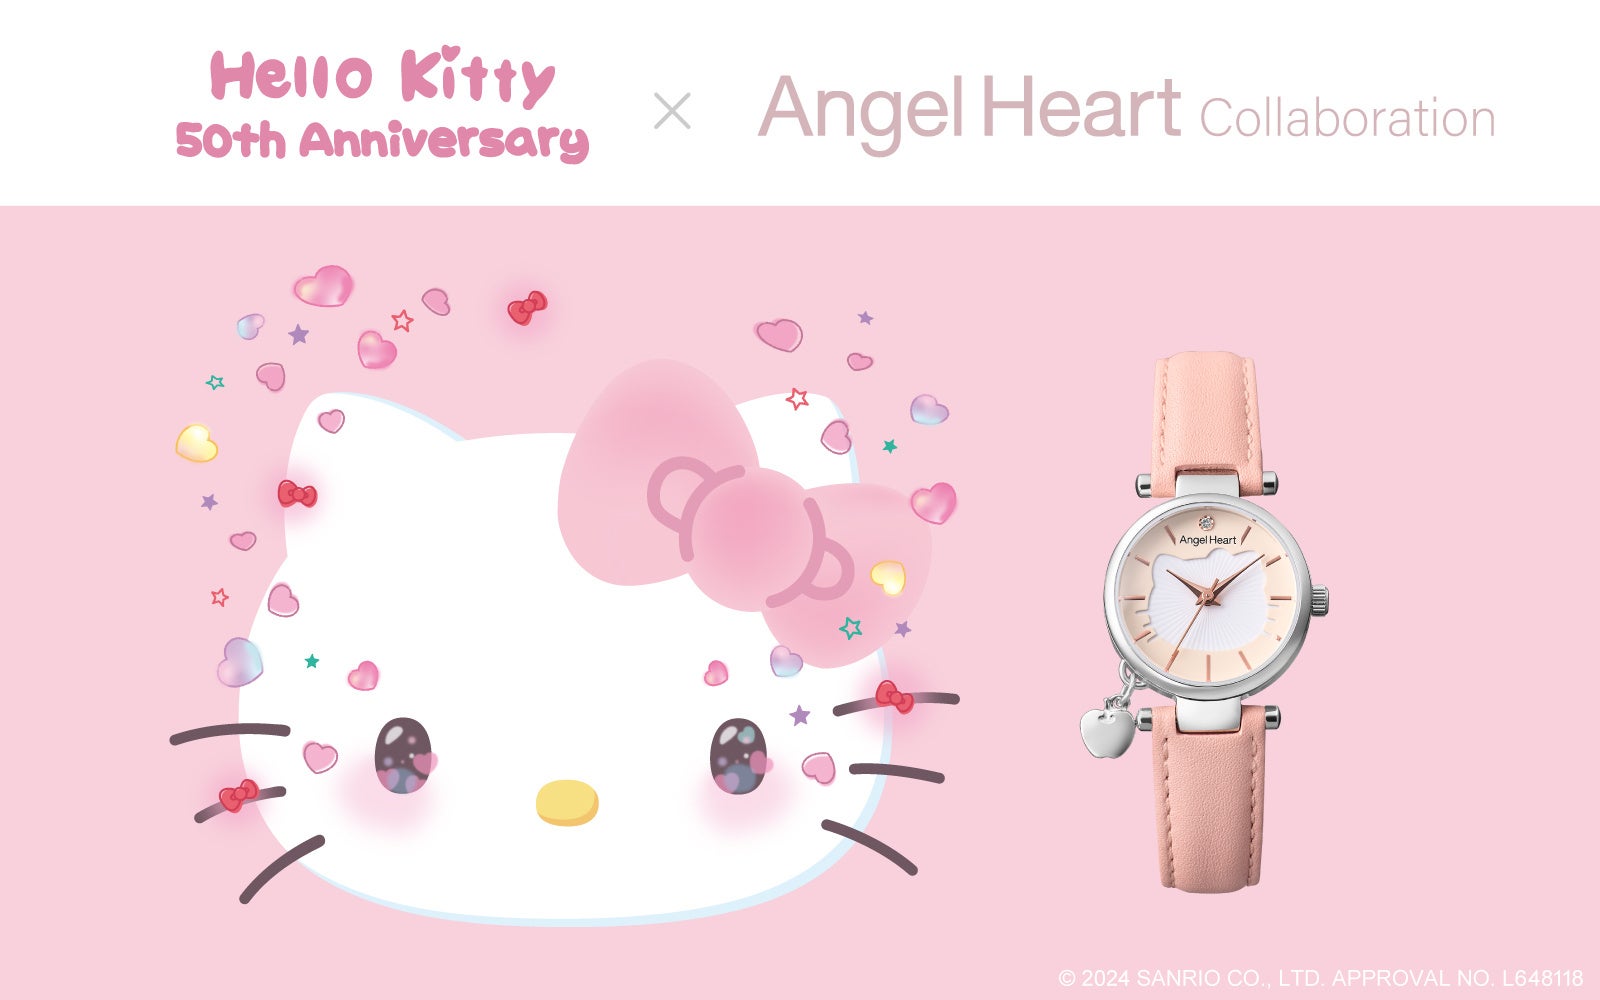 腕時計ブランドAngel Heart（エンジェルハート）はブランド設立20周年を記念して、誕生50周年となる『Hello Kitty』とのコラボレーションウォッチを5月9日(木)より予約開始します。